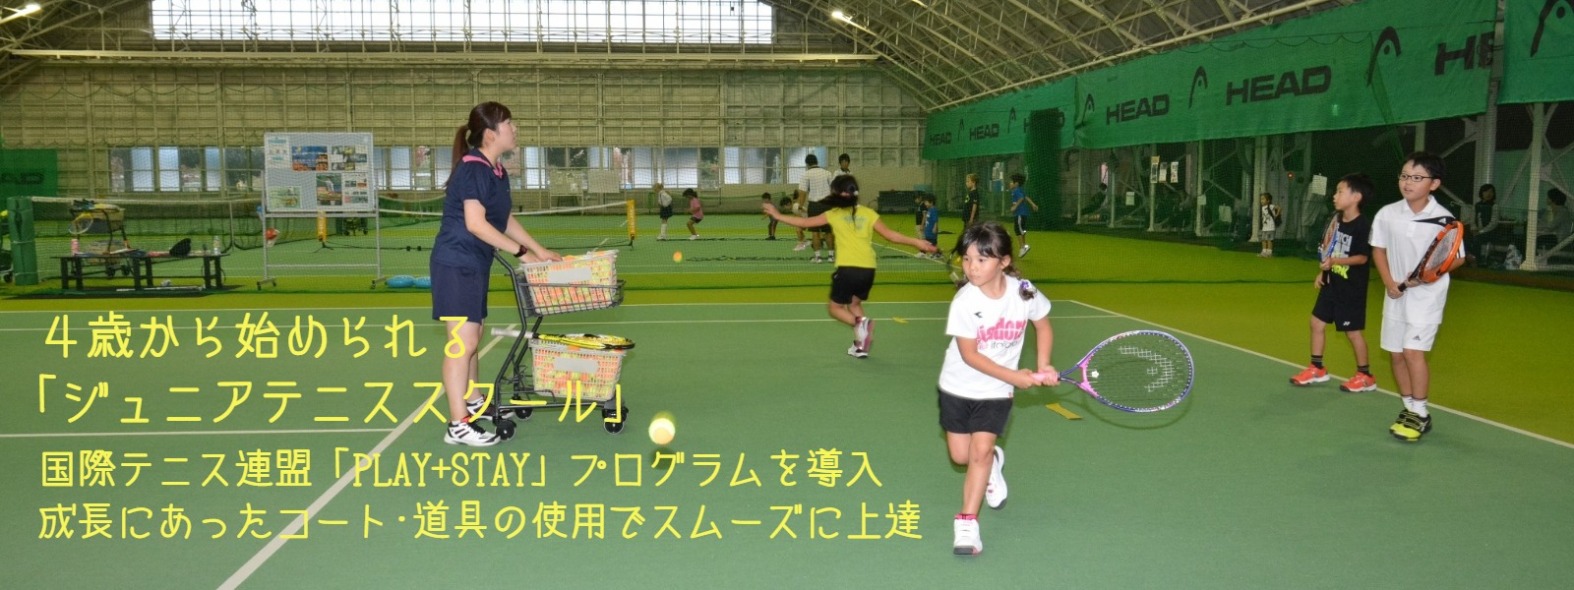 昭和の森テニスセンター 東京都昭島市 公式サイト